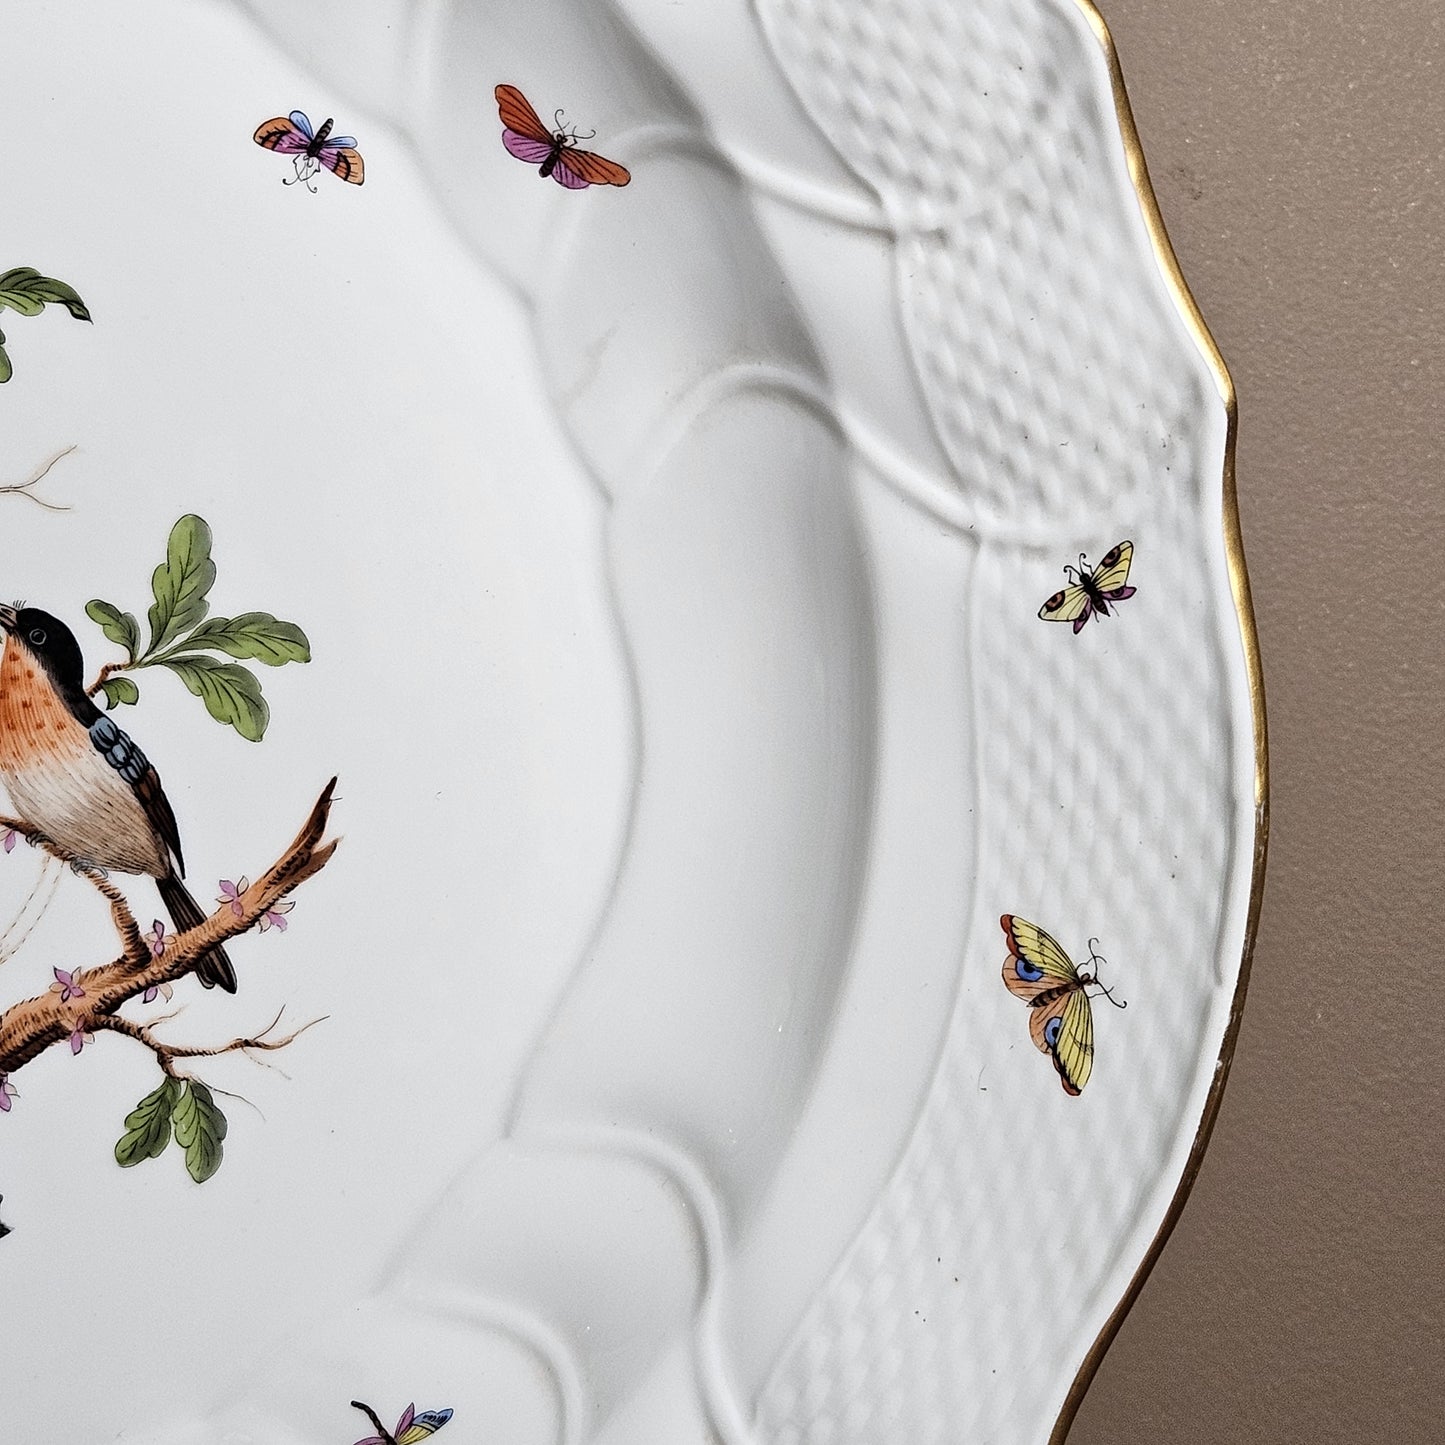 Vintage Herend Rothschild Bird 16" Round Serving Platter